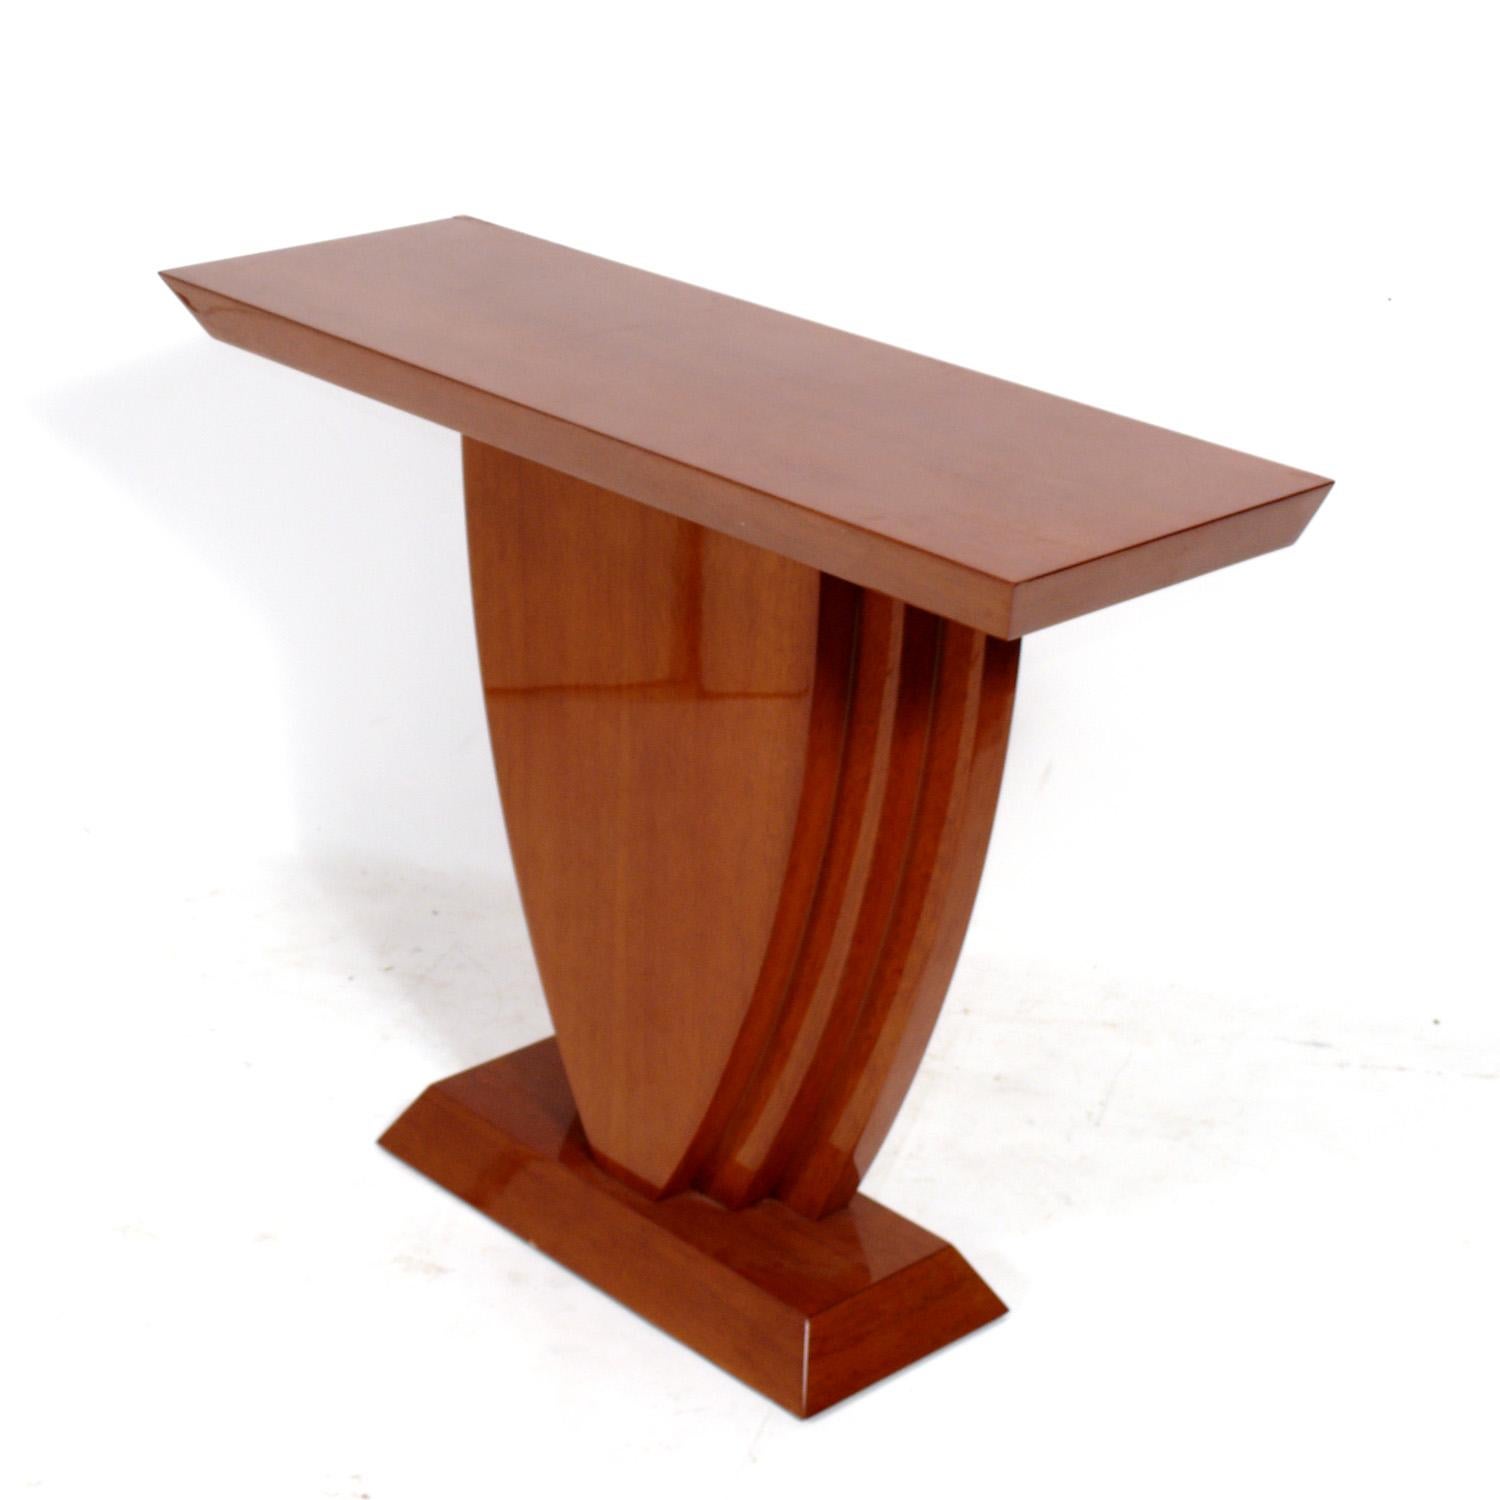 Table console curviligne, conçue par Enrique Garcel, Colombie, vers les années 1980. Il est construit en bois tropicaux magnifiques. Il s'agit d'un format polyvalent qui peut être utilisé comme  une console, une table de canapé, une table multimédia